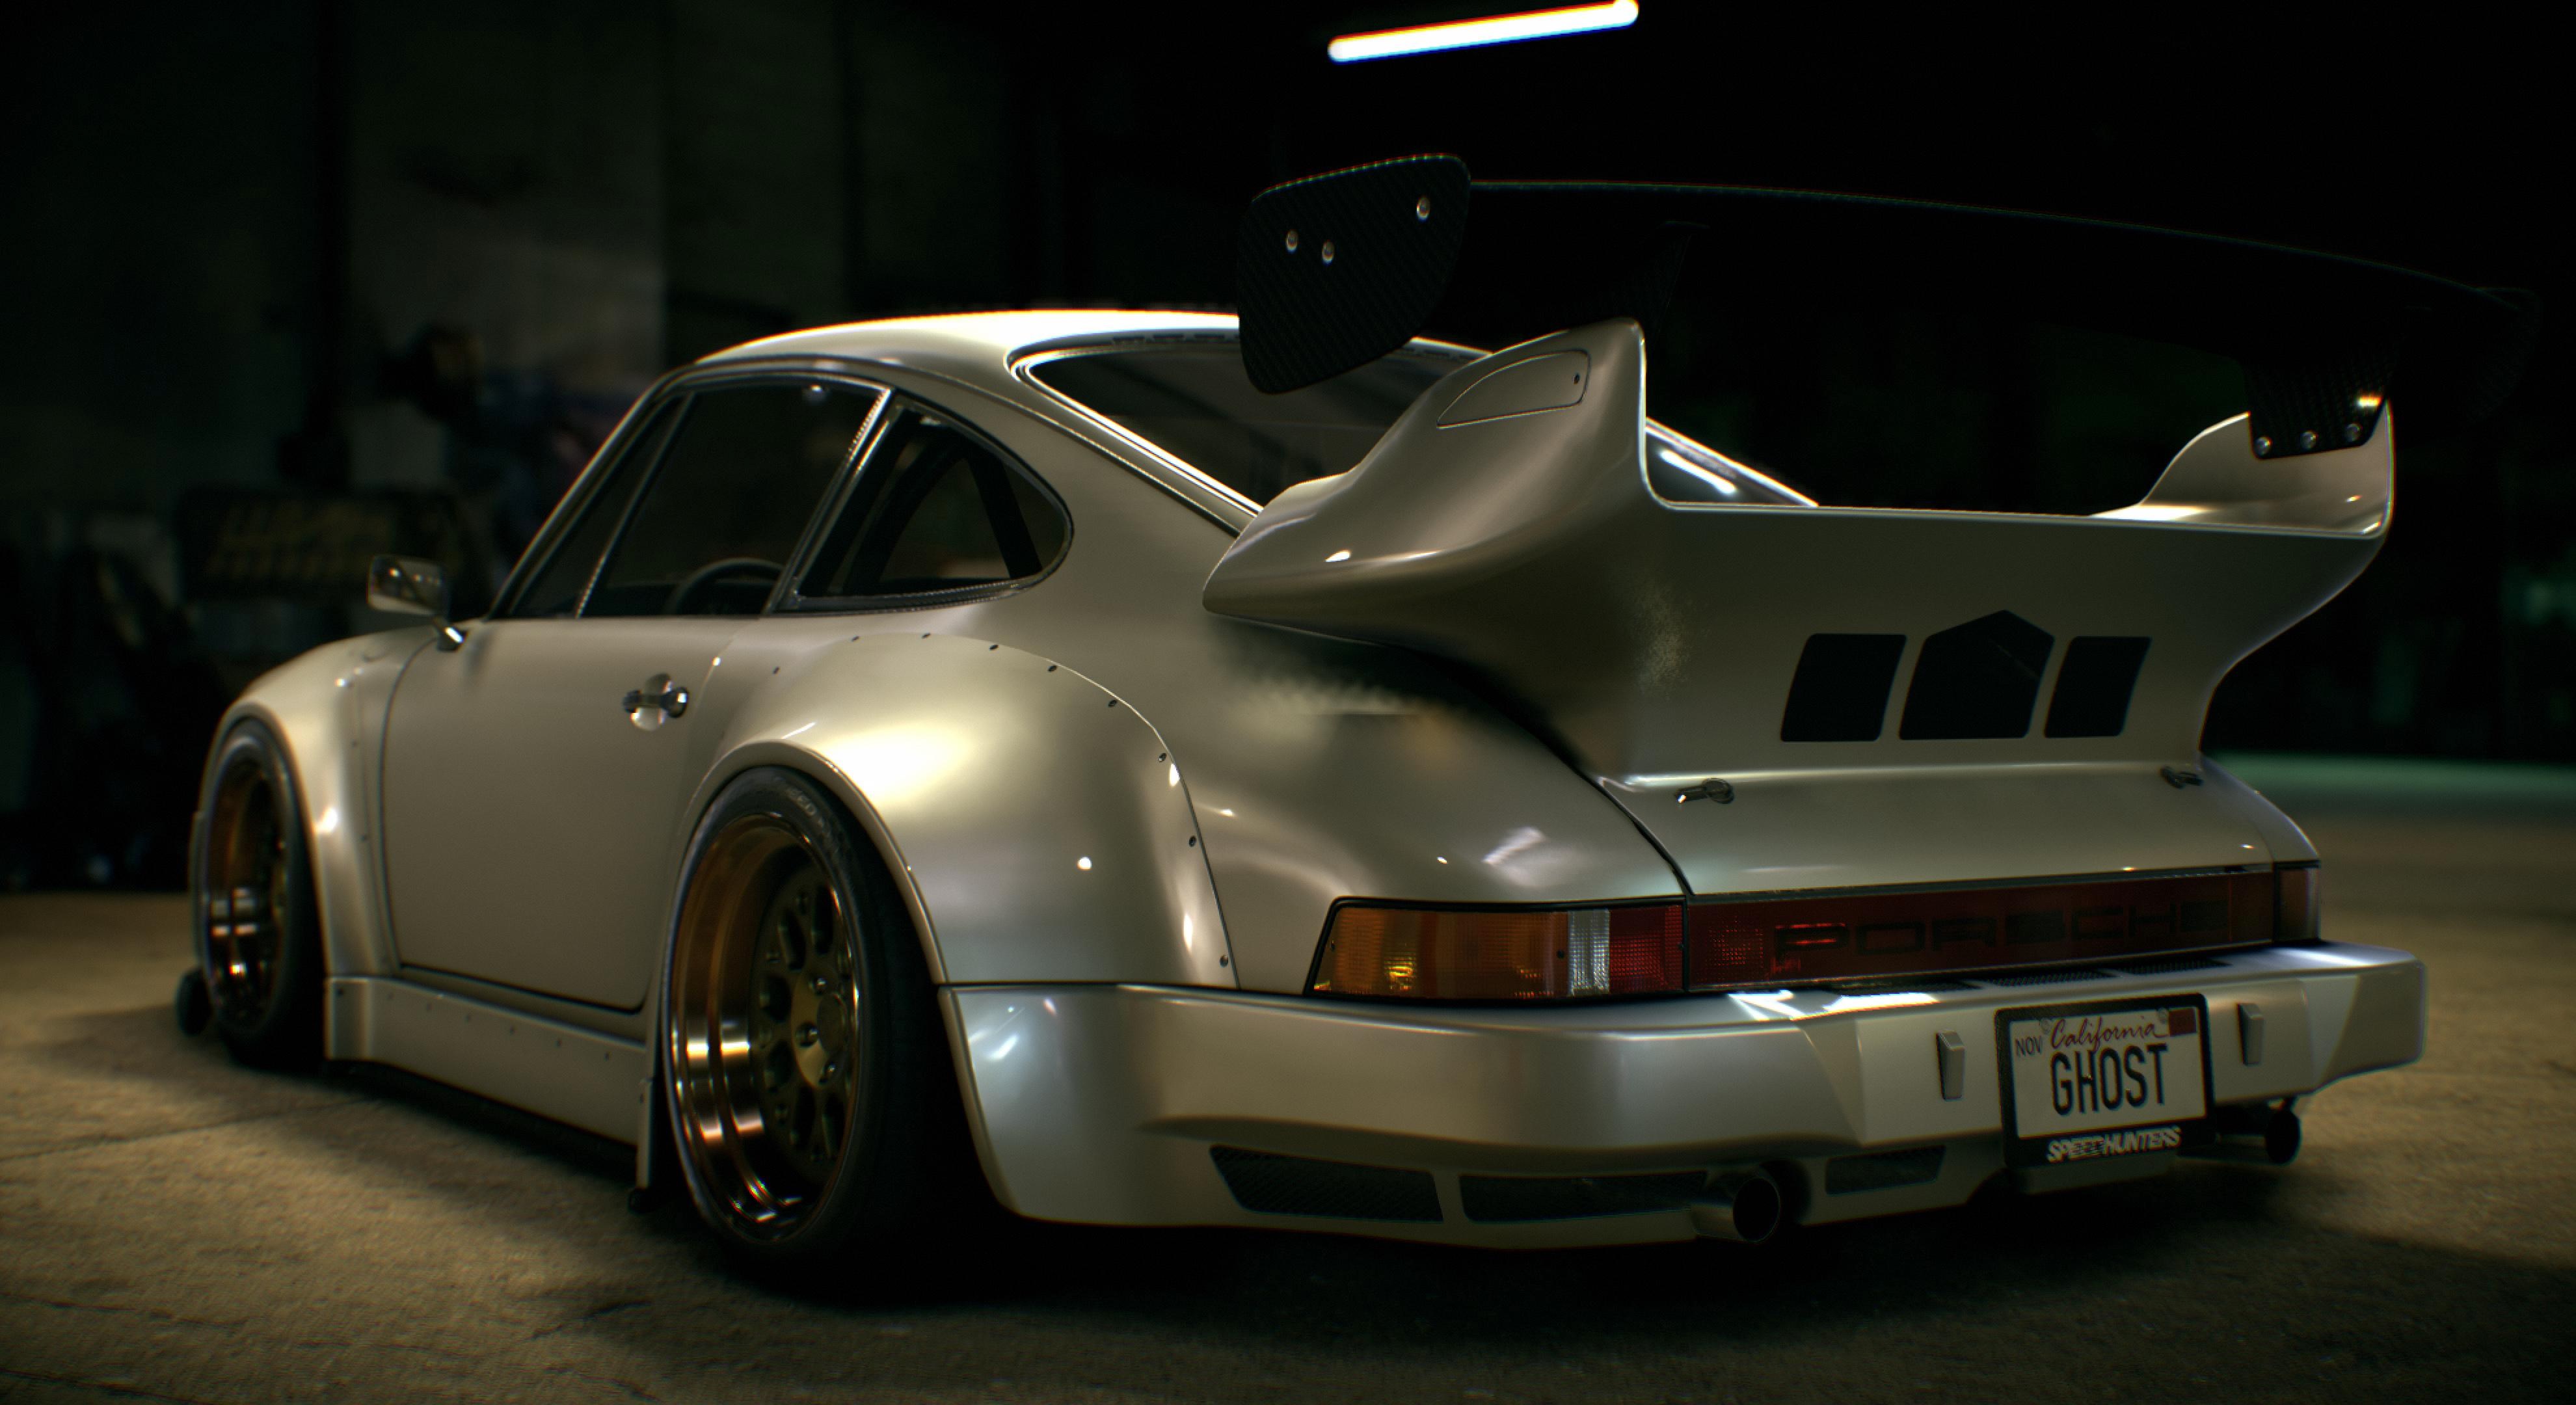 Porsche 911 Need For Speed 2015 - HD Wallpaper 